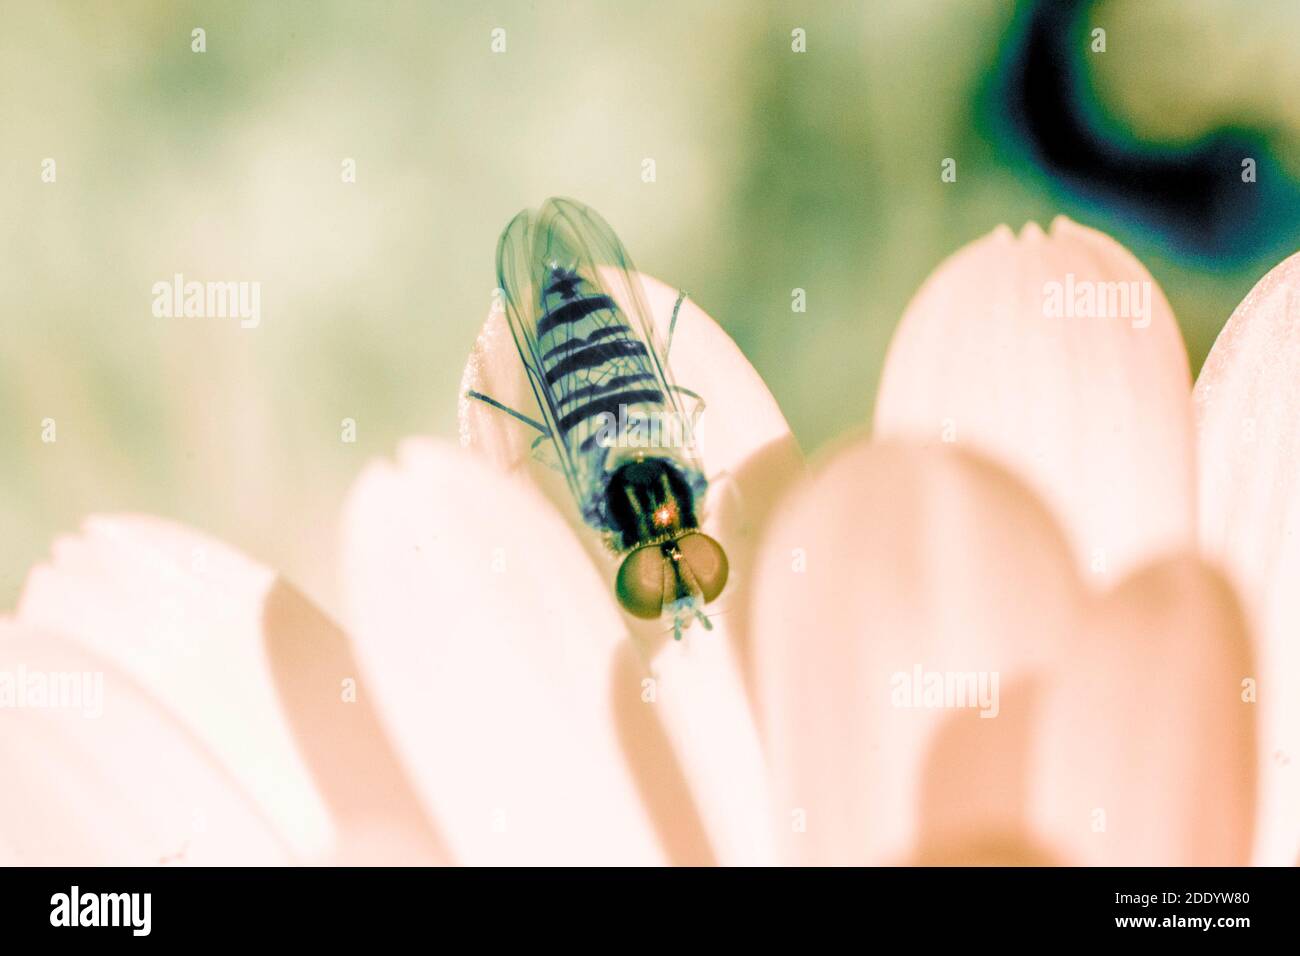 Schwebfliege fliegendes Insekt und Blume mit reflektierten Infrarotlicht erstellt - Draufsicht Stockfoto